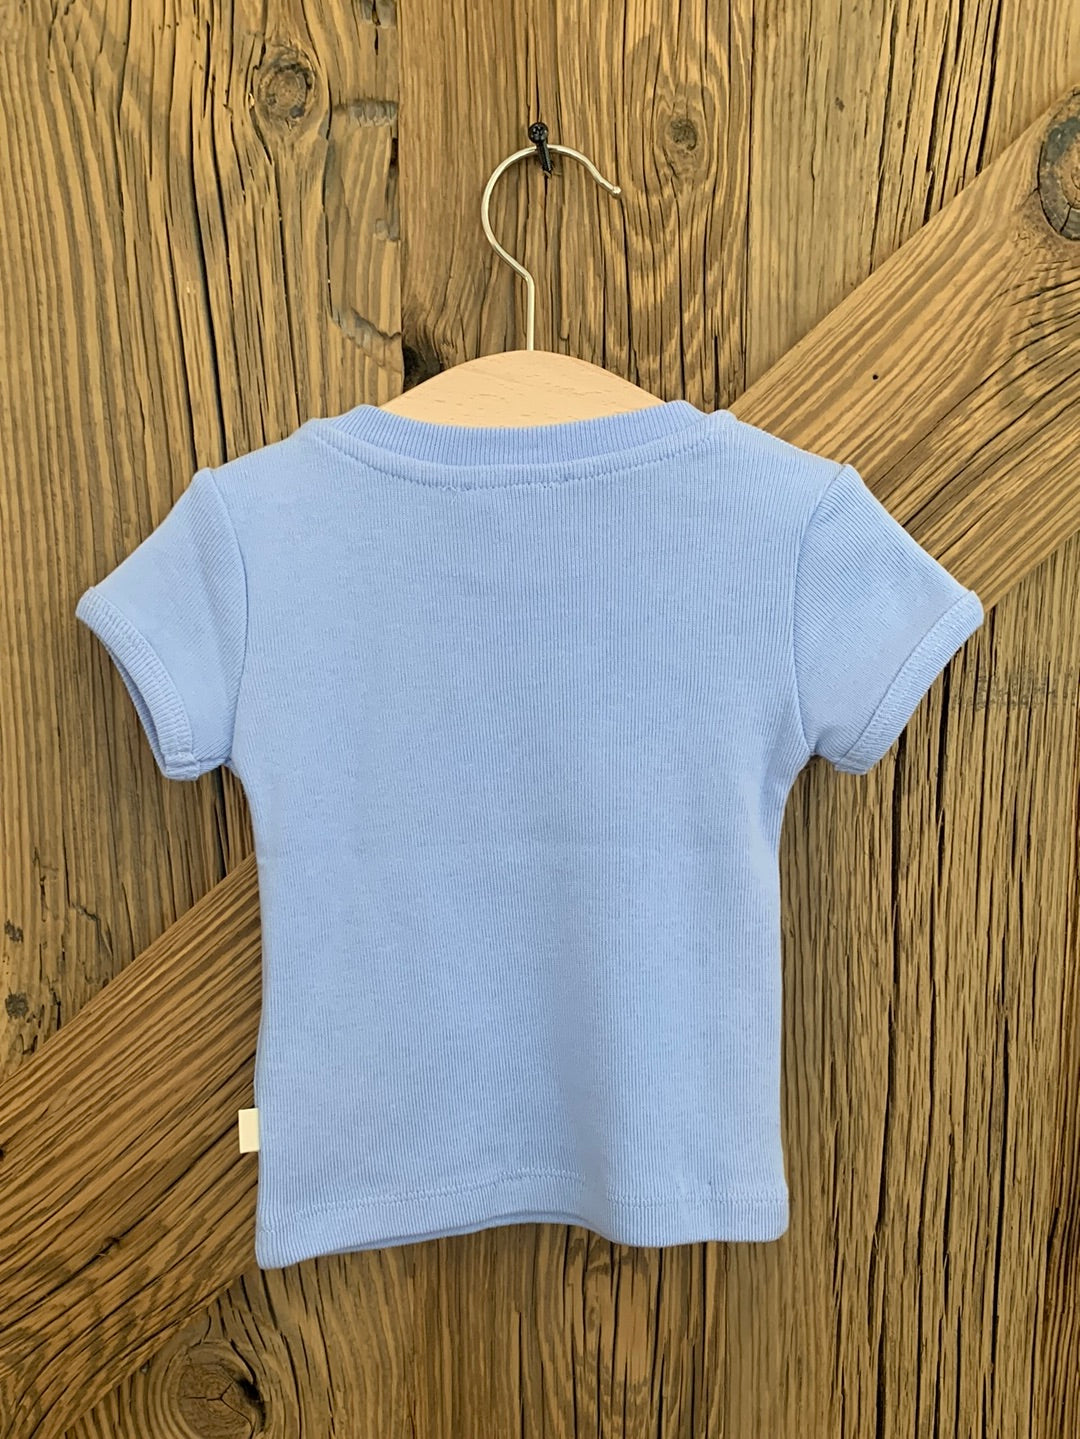 Kinder T-shirt & Hose Set Blau